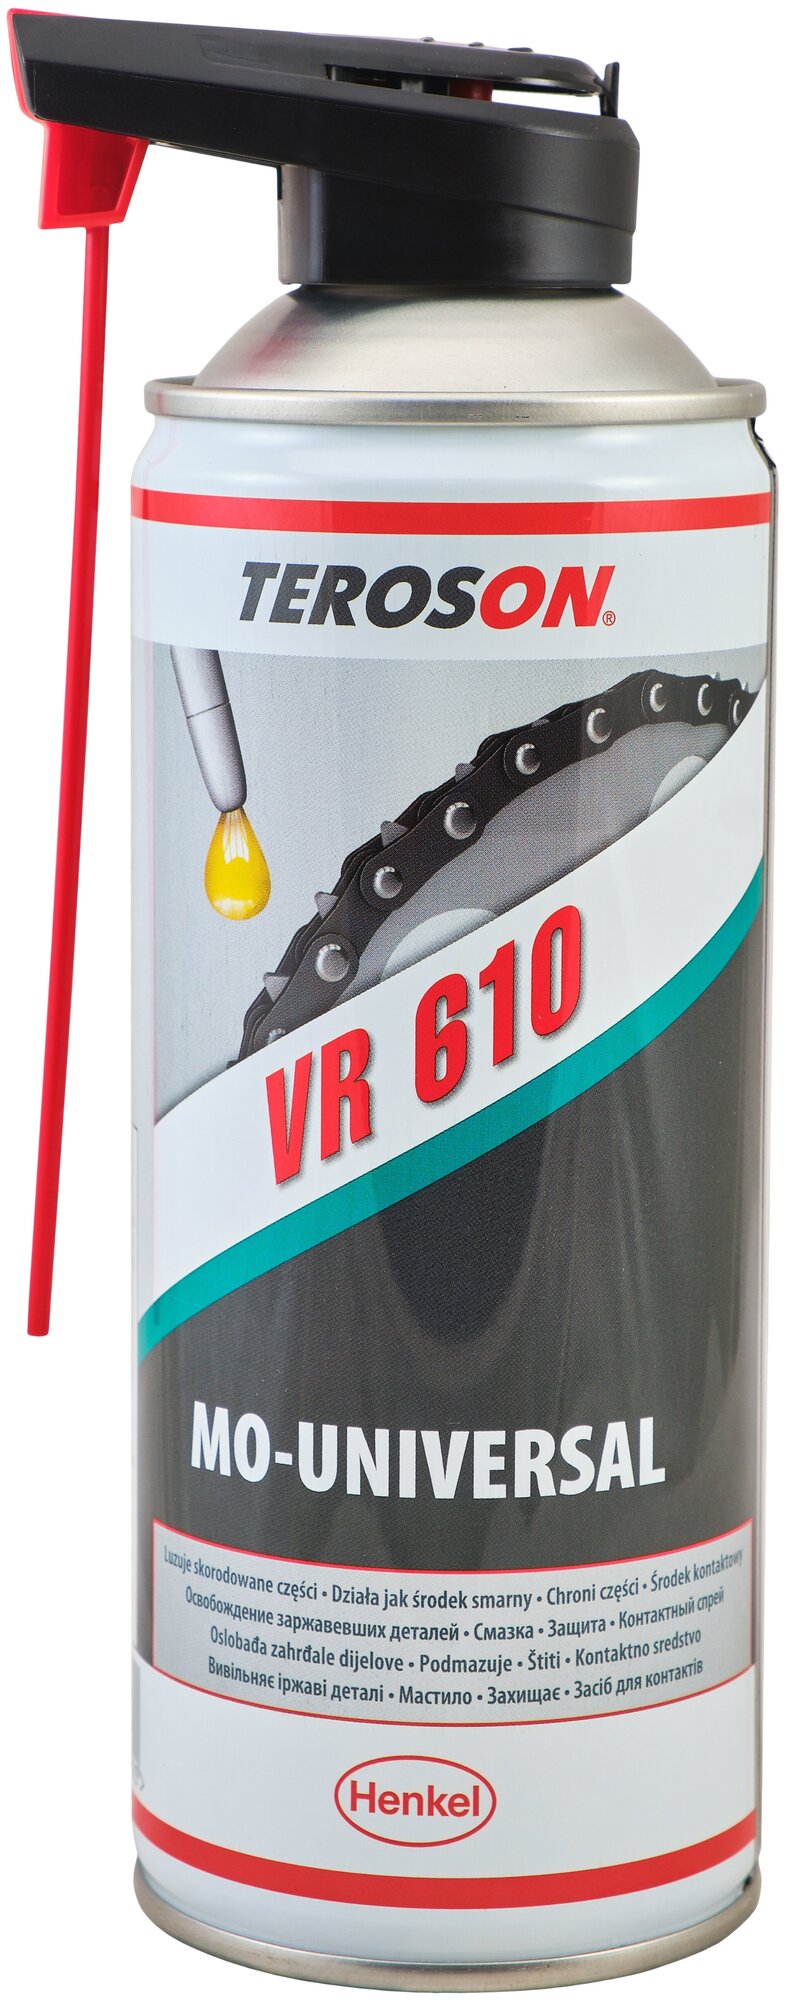 TEROSON VR 610 многоцелевая универсальная смазка спрей 400 мл